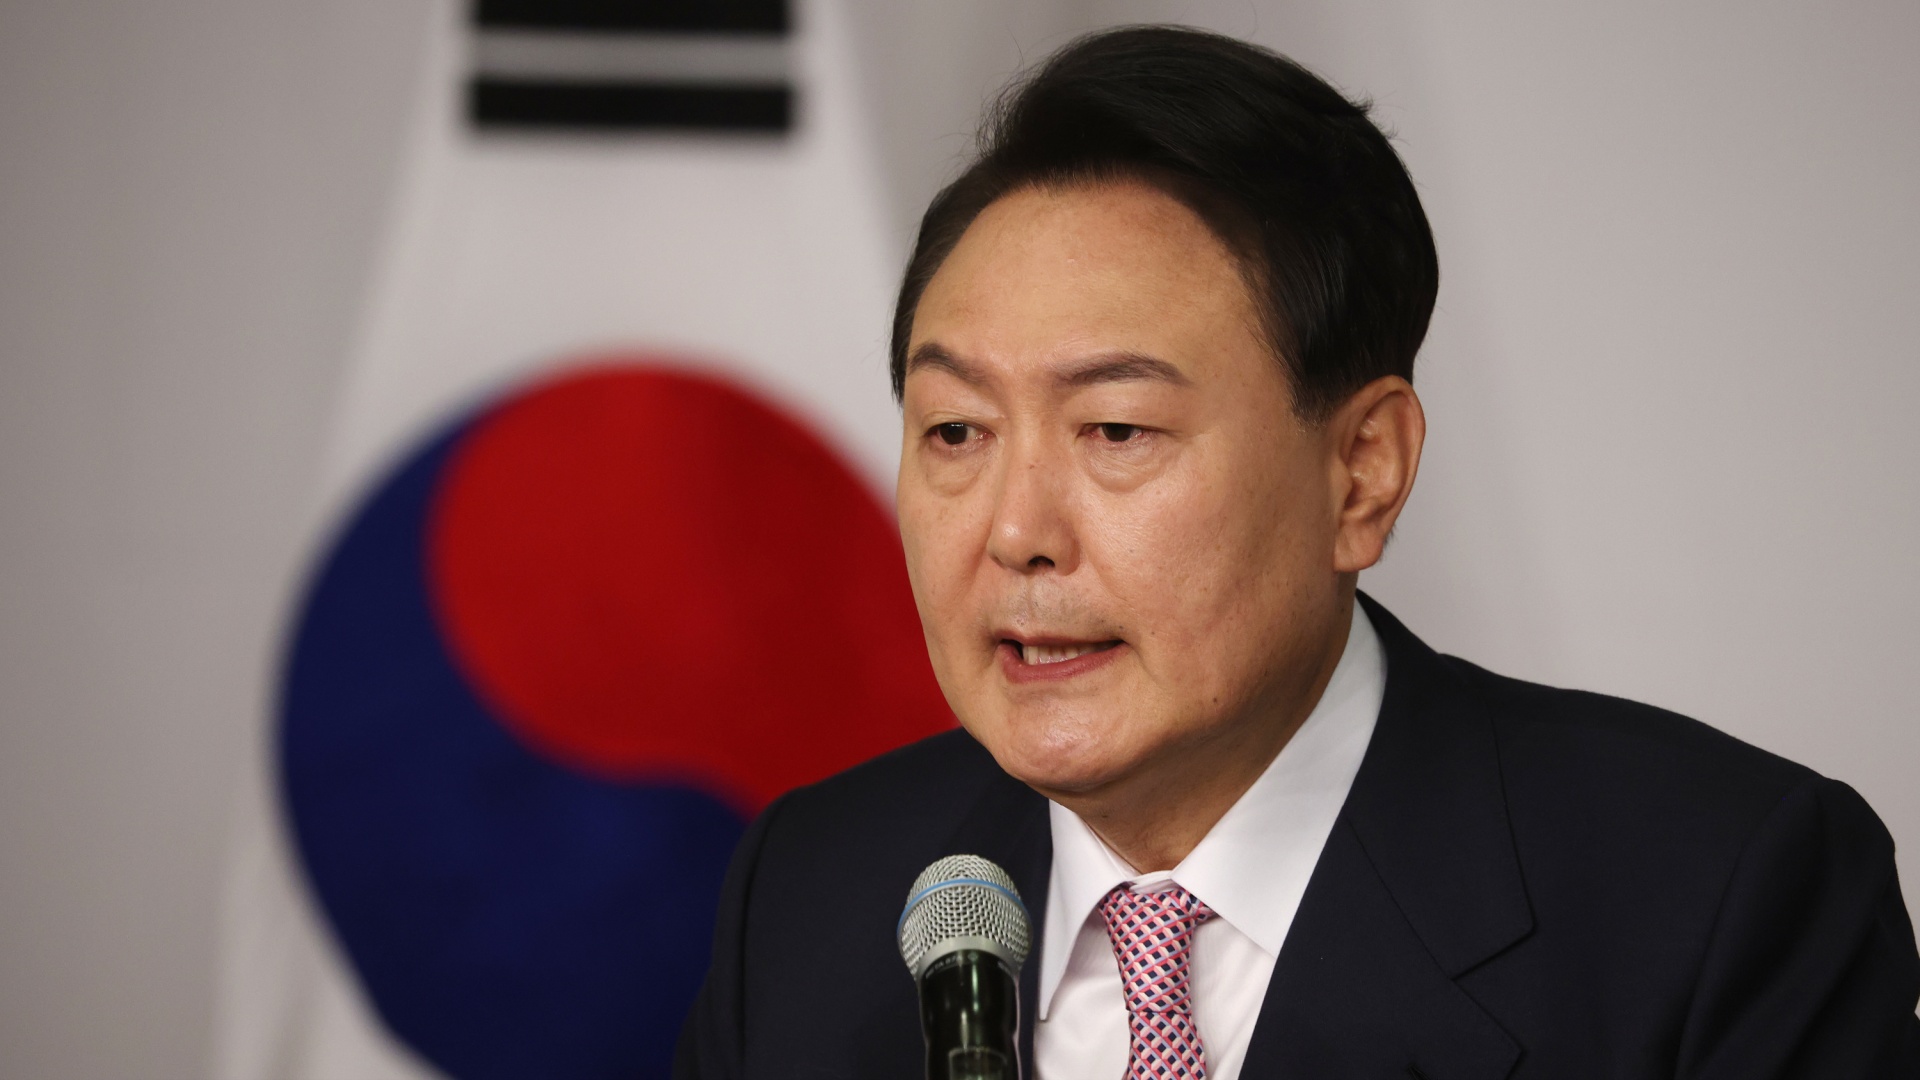 Новый президент Южной Кореи: «Я жёстко отвечу на незаконные действия КНДР»